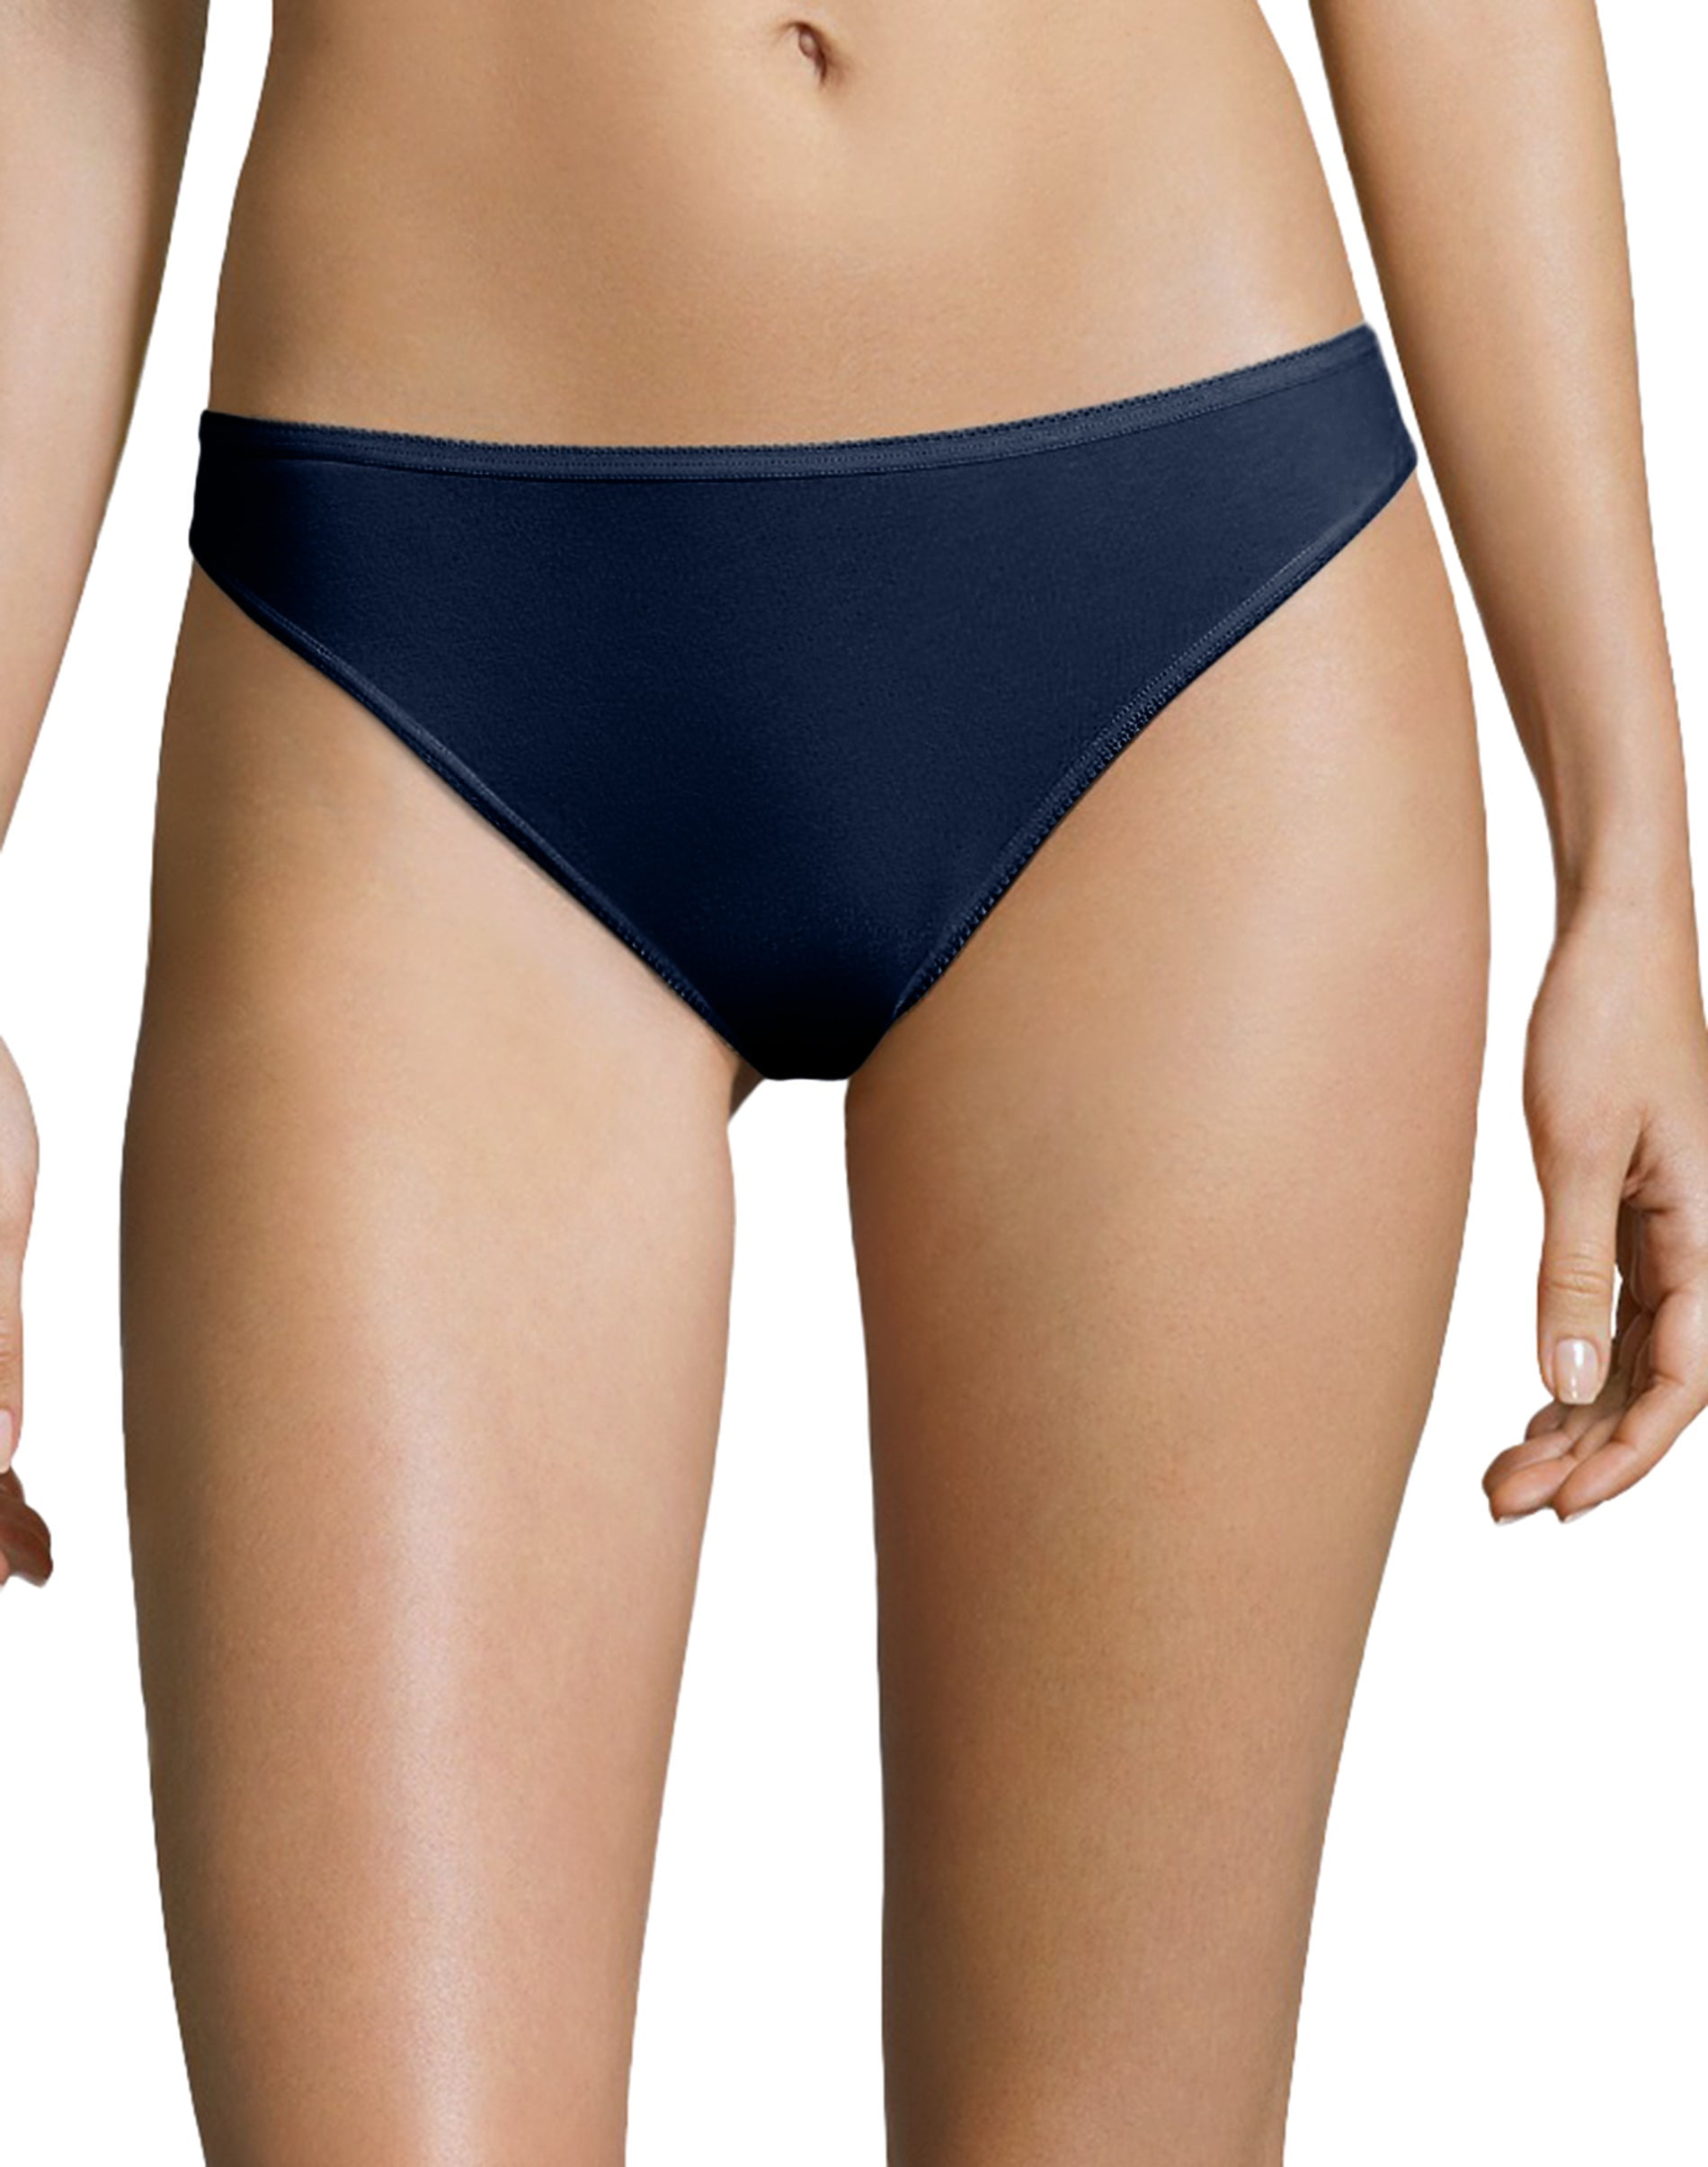 Hanes Women's Microfiber Stretch Thong Underwear, Comfort Flex